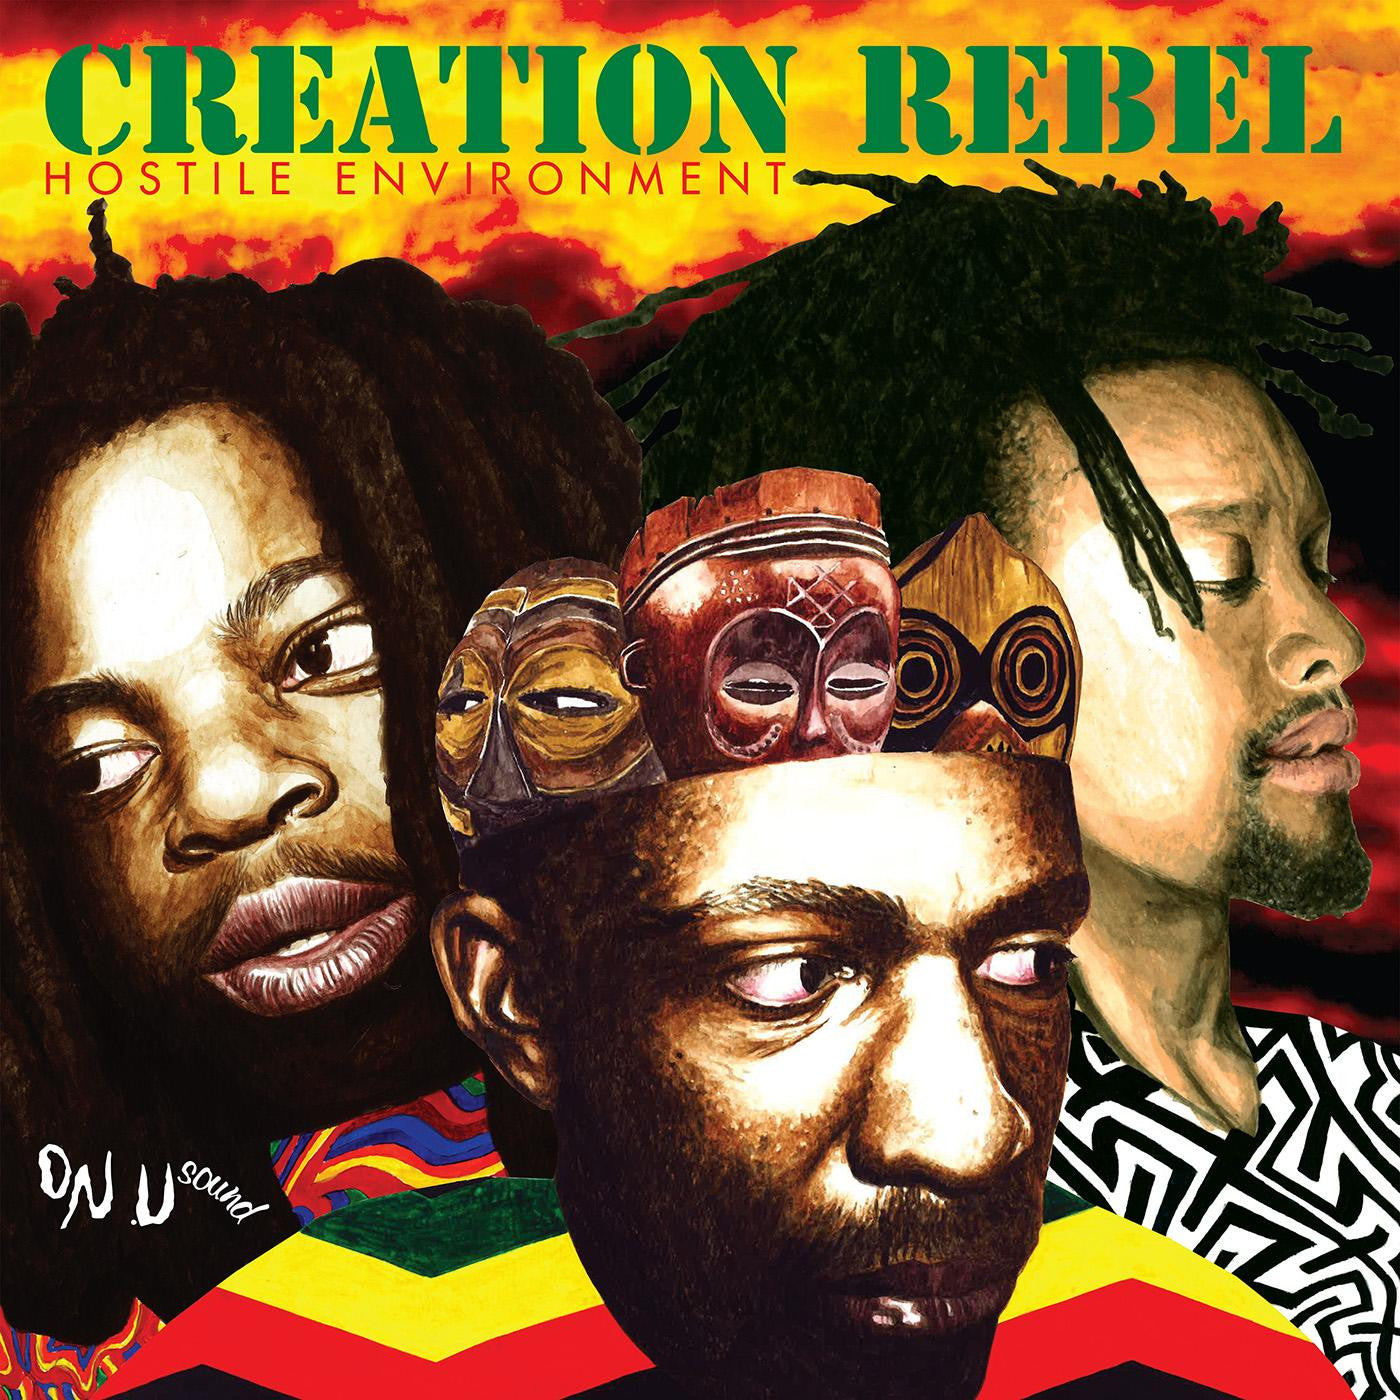 CD - Creation Rebel - Hostile Environment